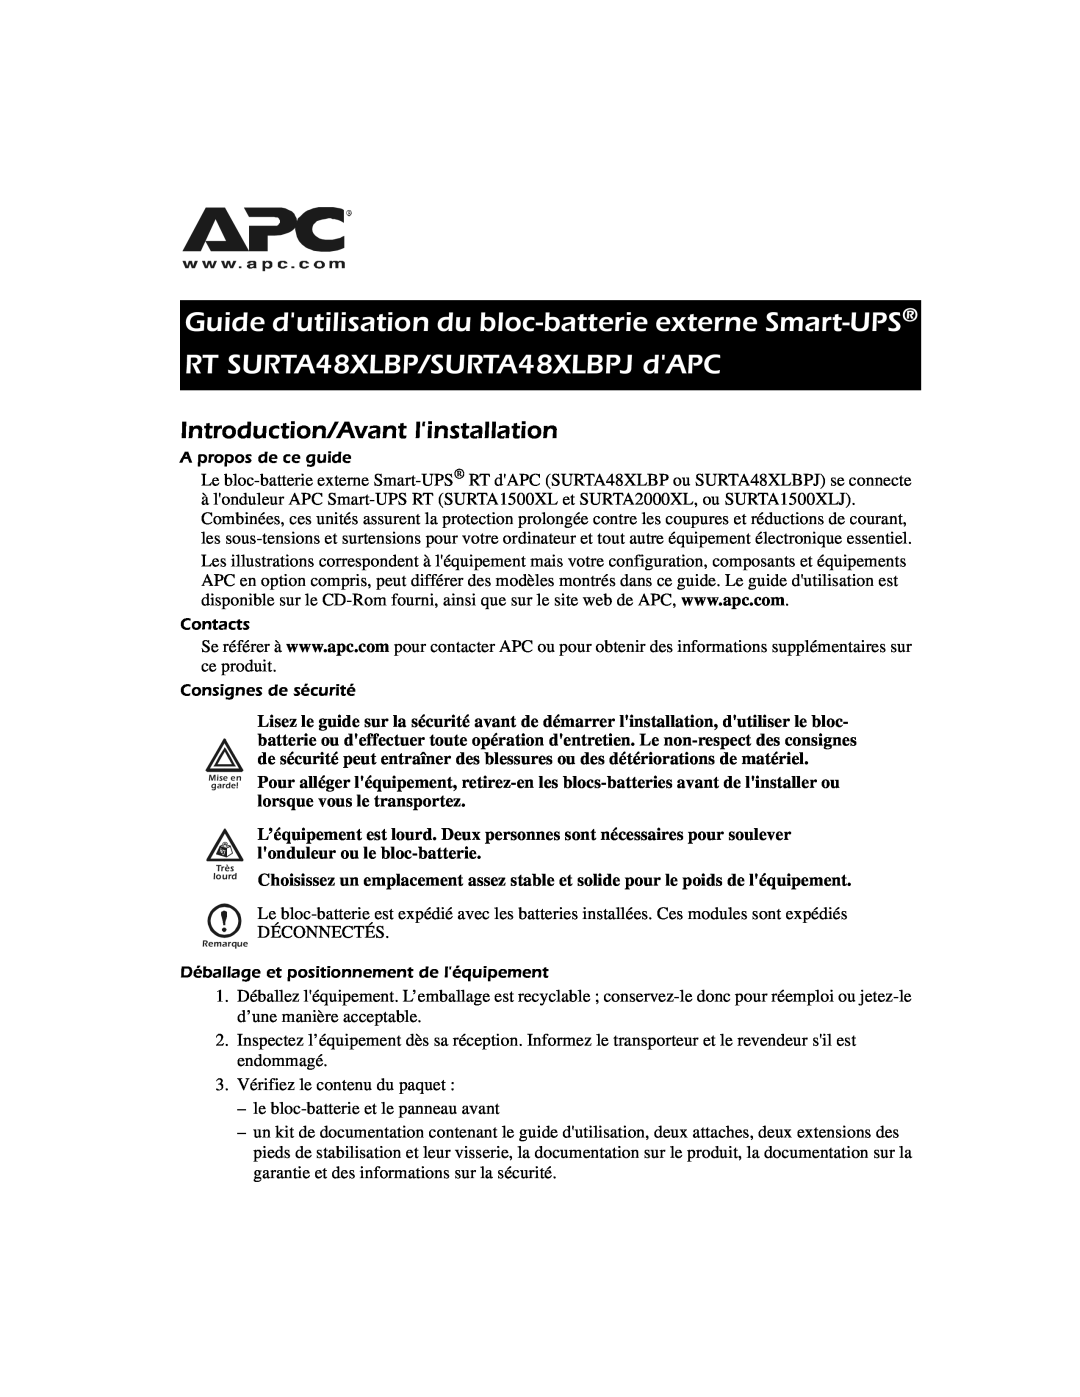 APC SURTA48XLBP manual Introduction/Avant linstallation, Guide dutilisation du bloc-batterie externe Smart-UPS 